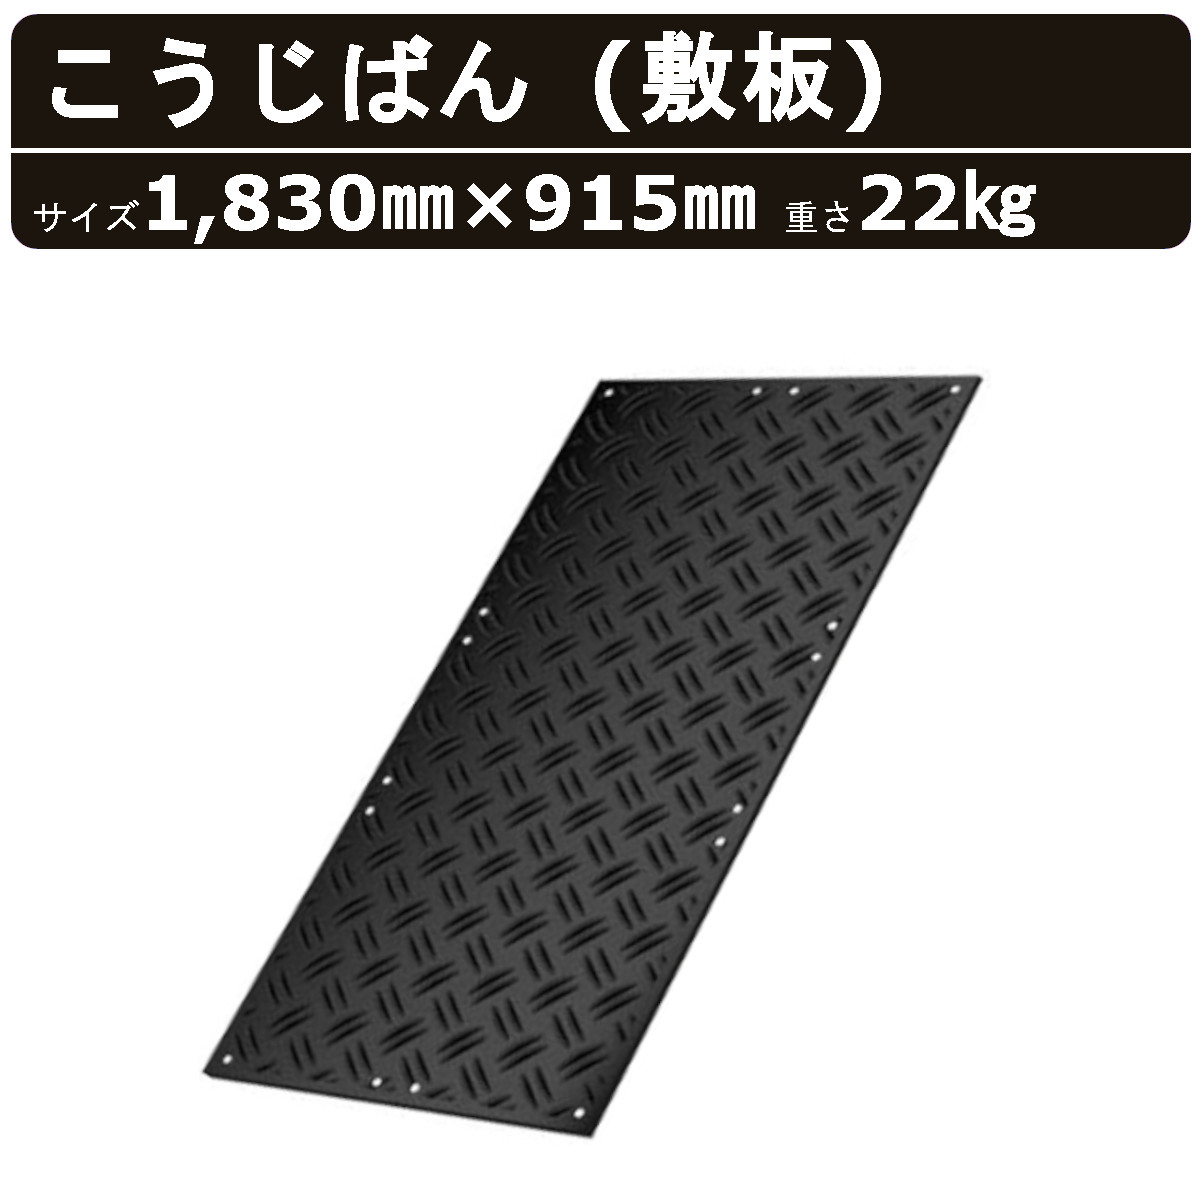 こうじばん 強化型プラスチック敷板 3×6尺 ブラック コンパネ